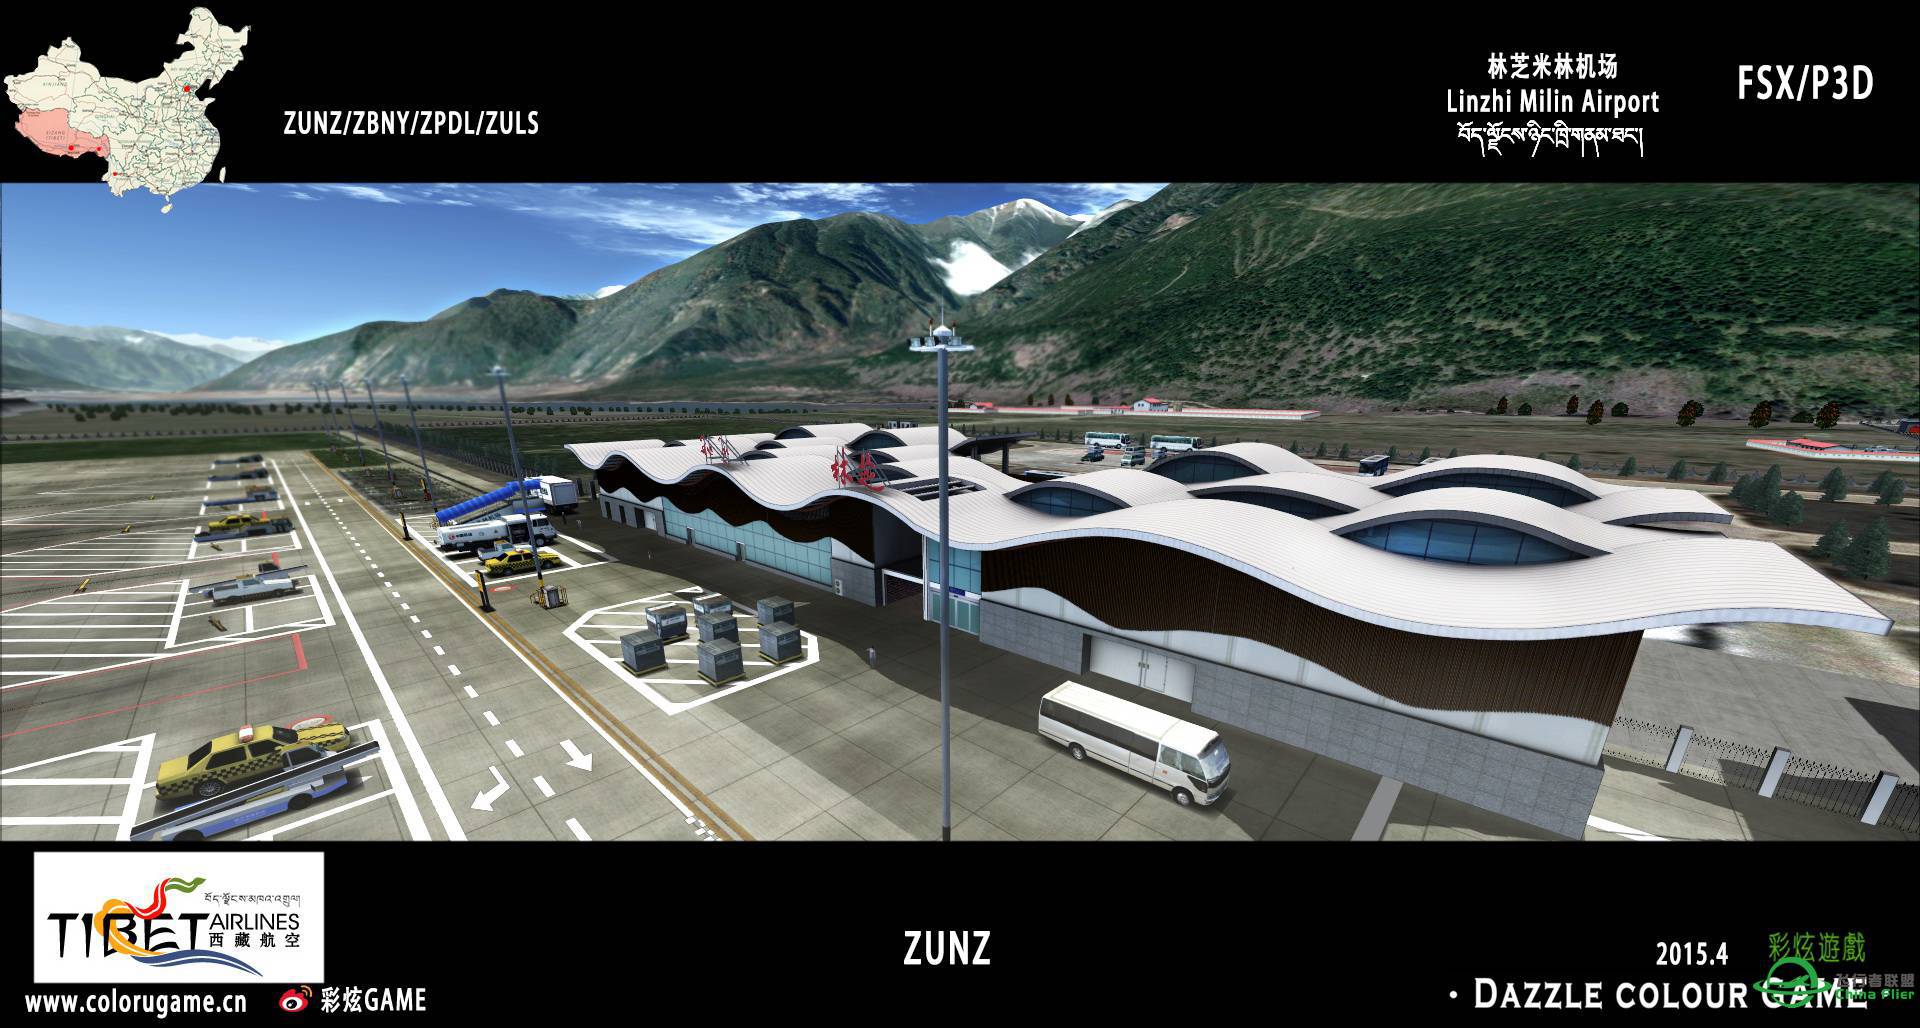 彩炫地景：林芝米林机场（ZUNZ）正式发布！-2717 